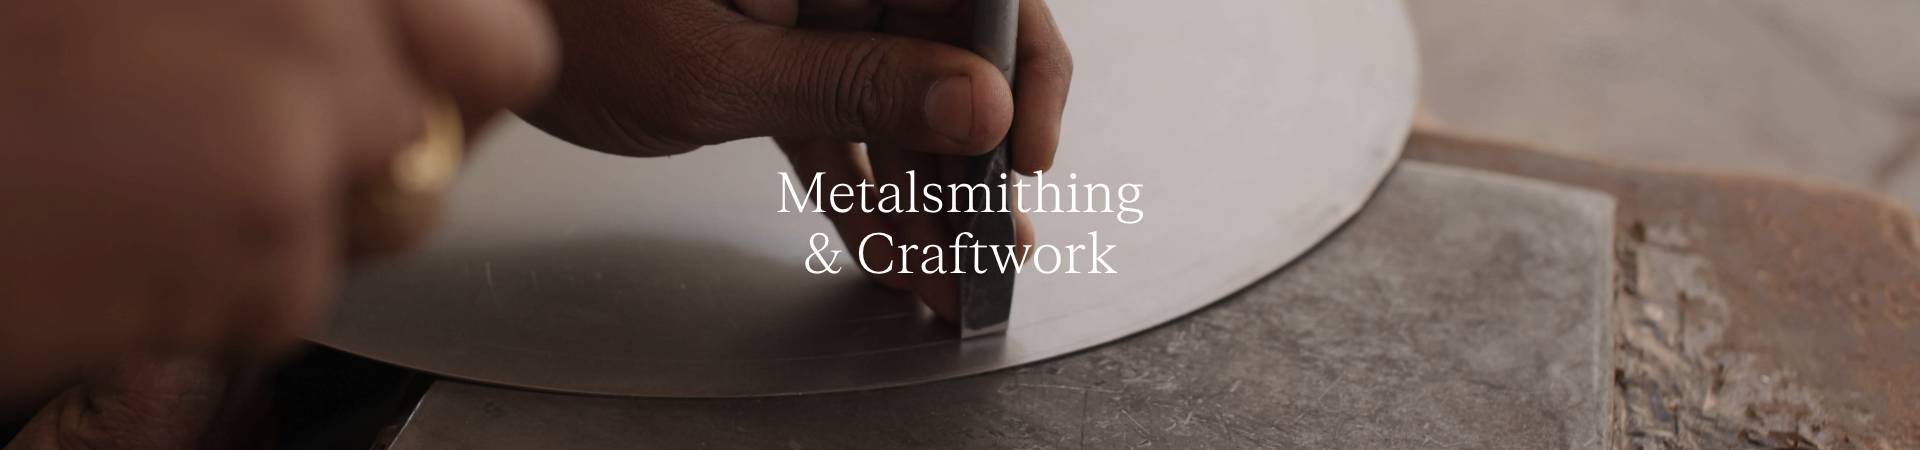 Metalsmithing.jpg